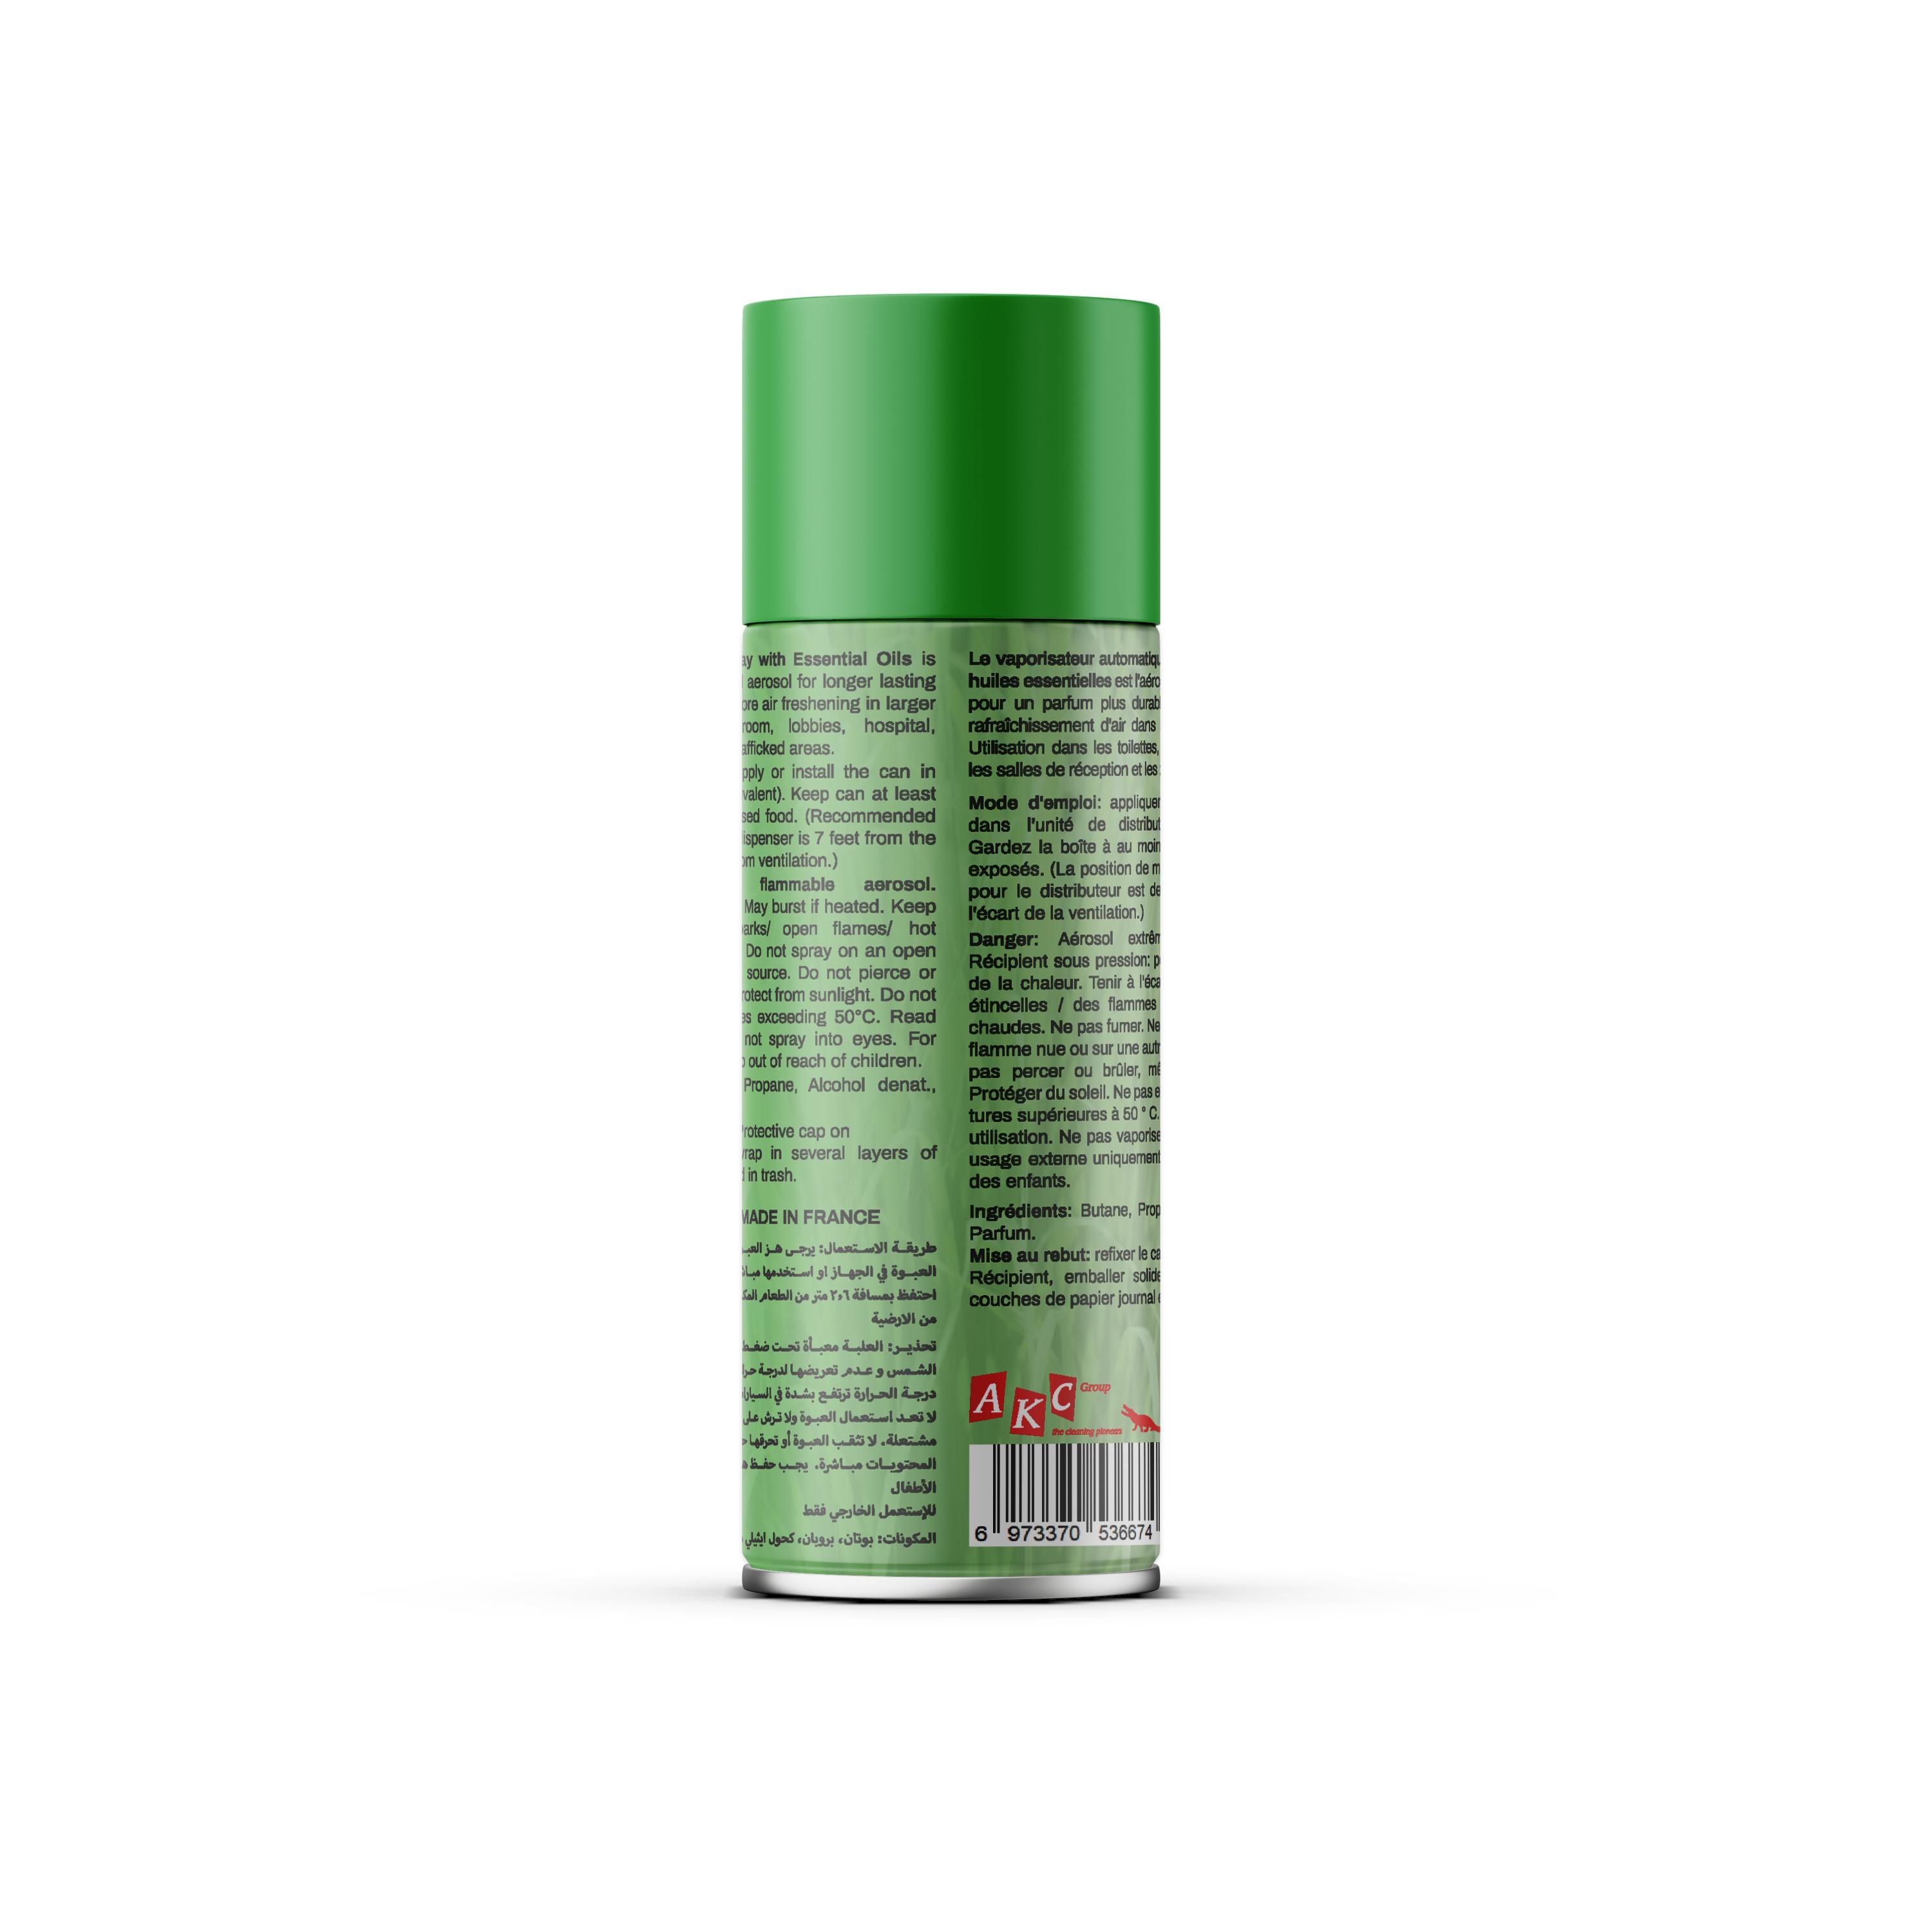 Scent Air Freshener | LEMON GRASS | 300ML